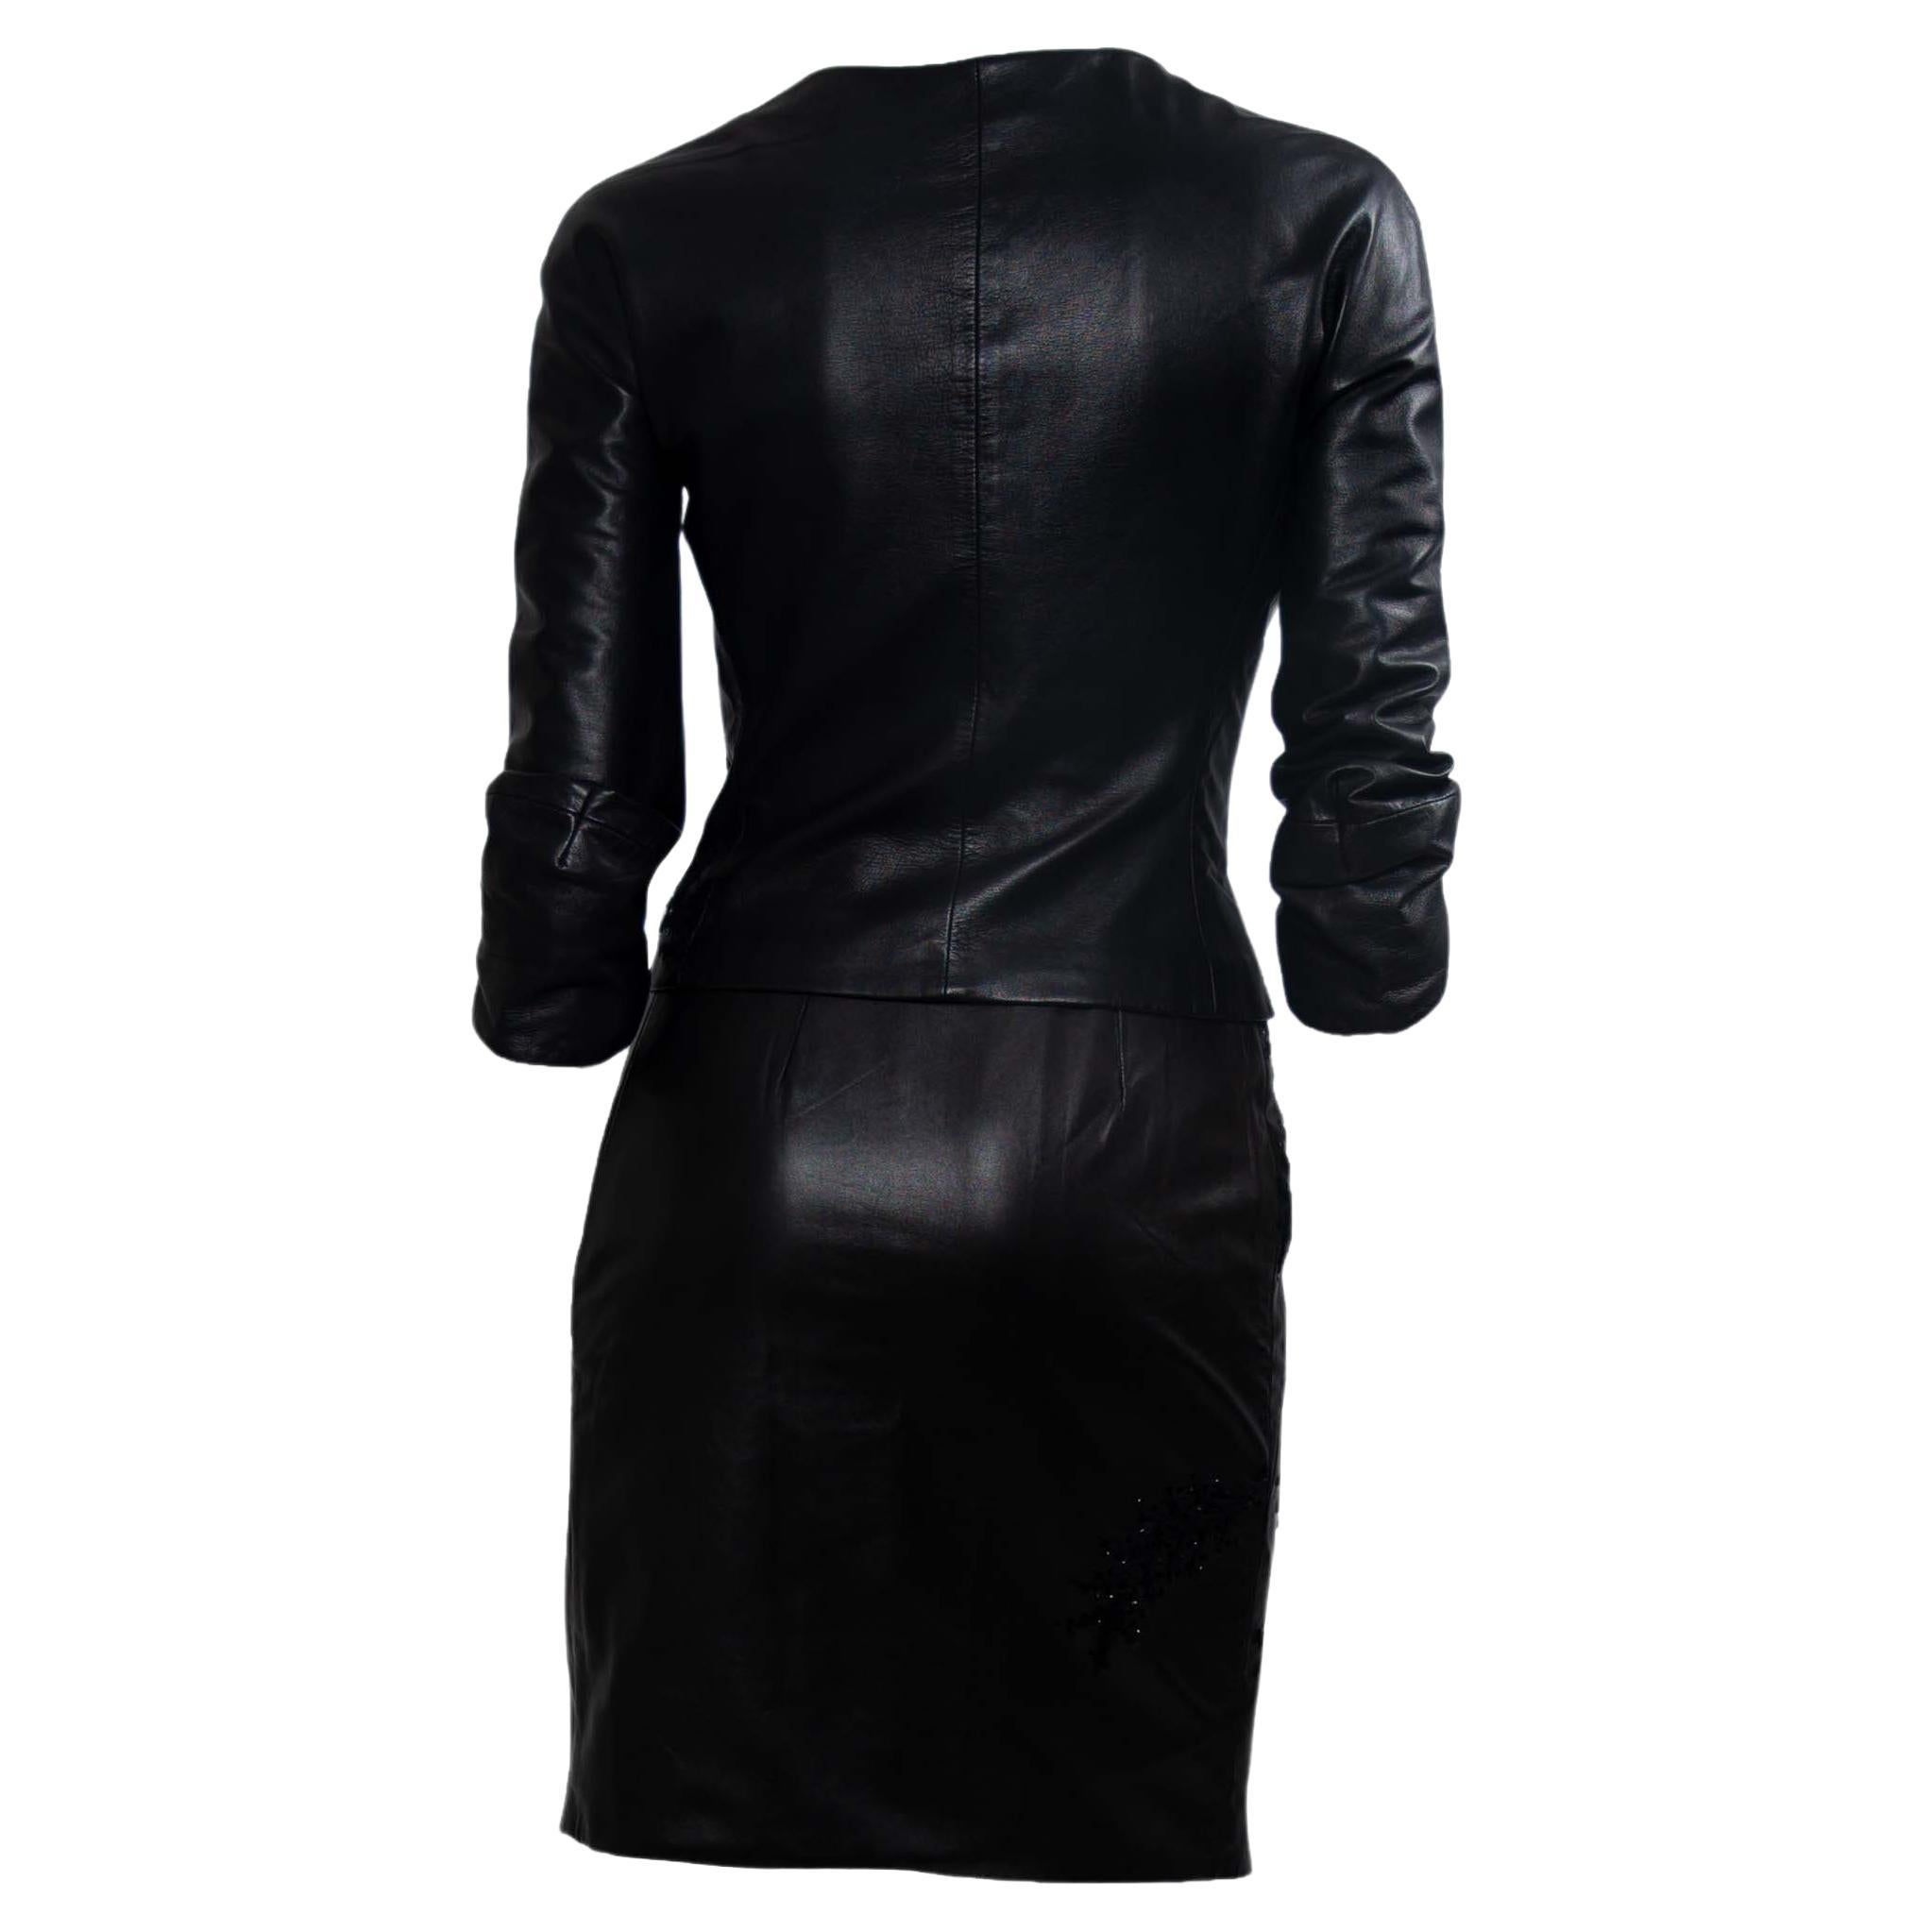 donatella leather dress